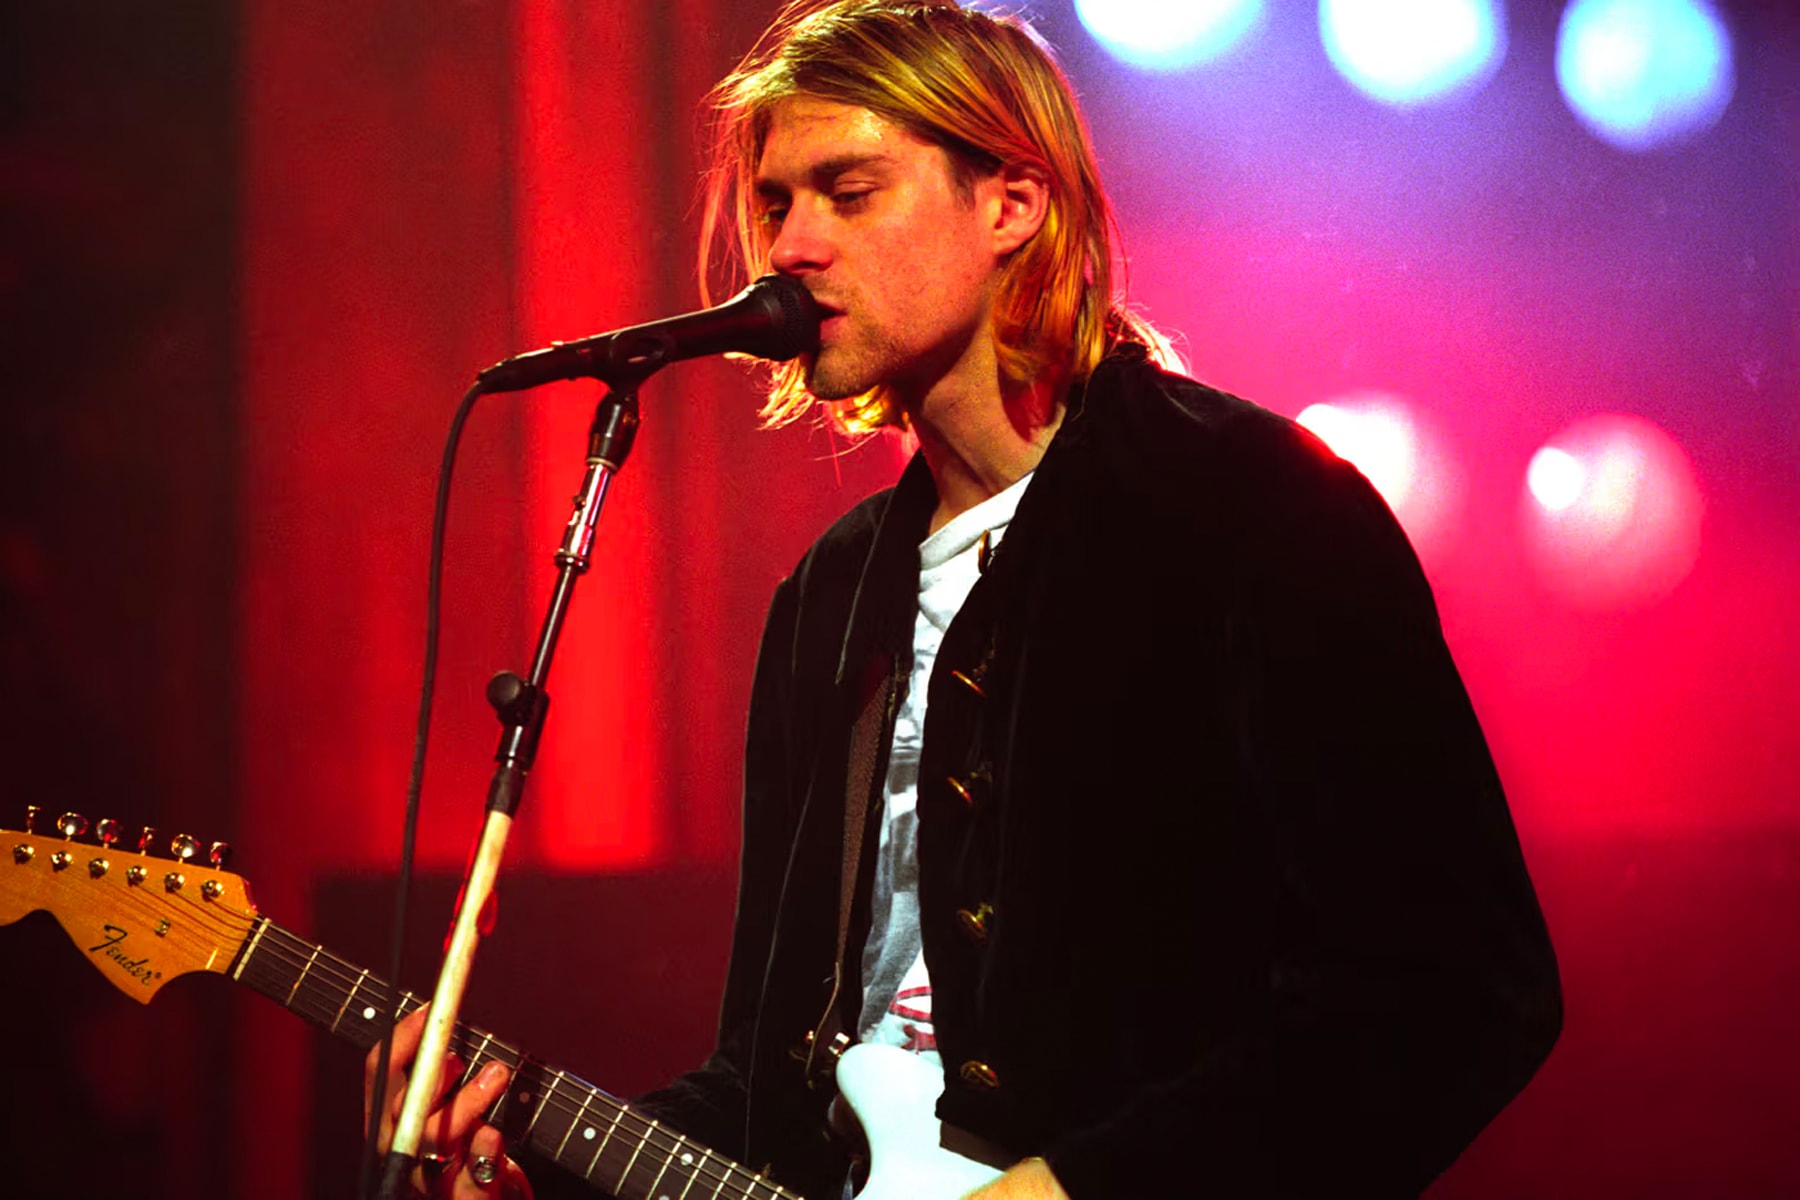 Kurt Cobain 生前保存之未開封香烟正式展開拍賣